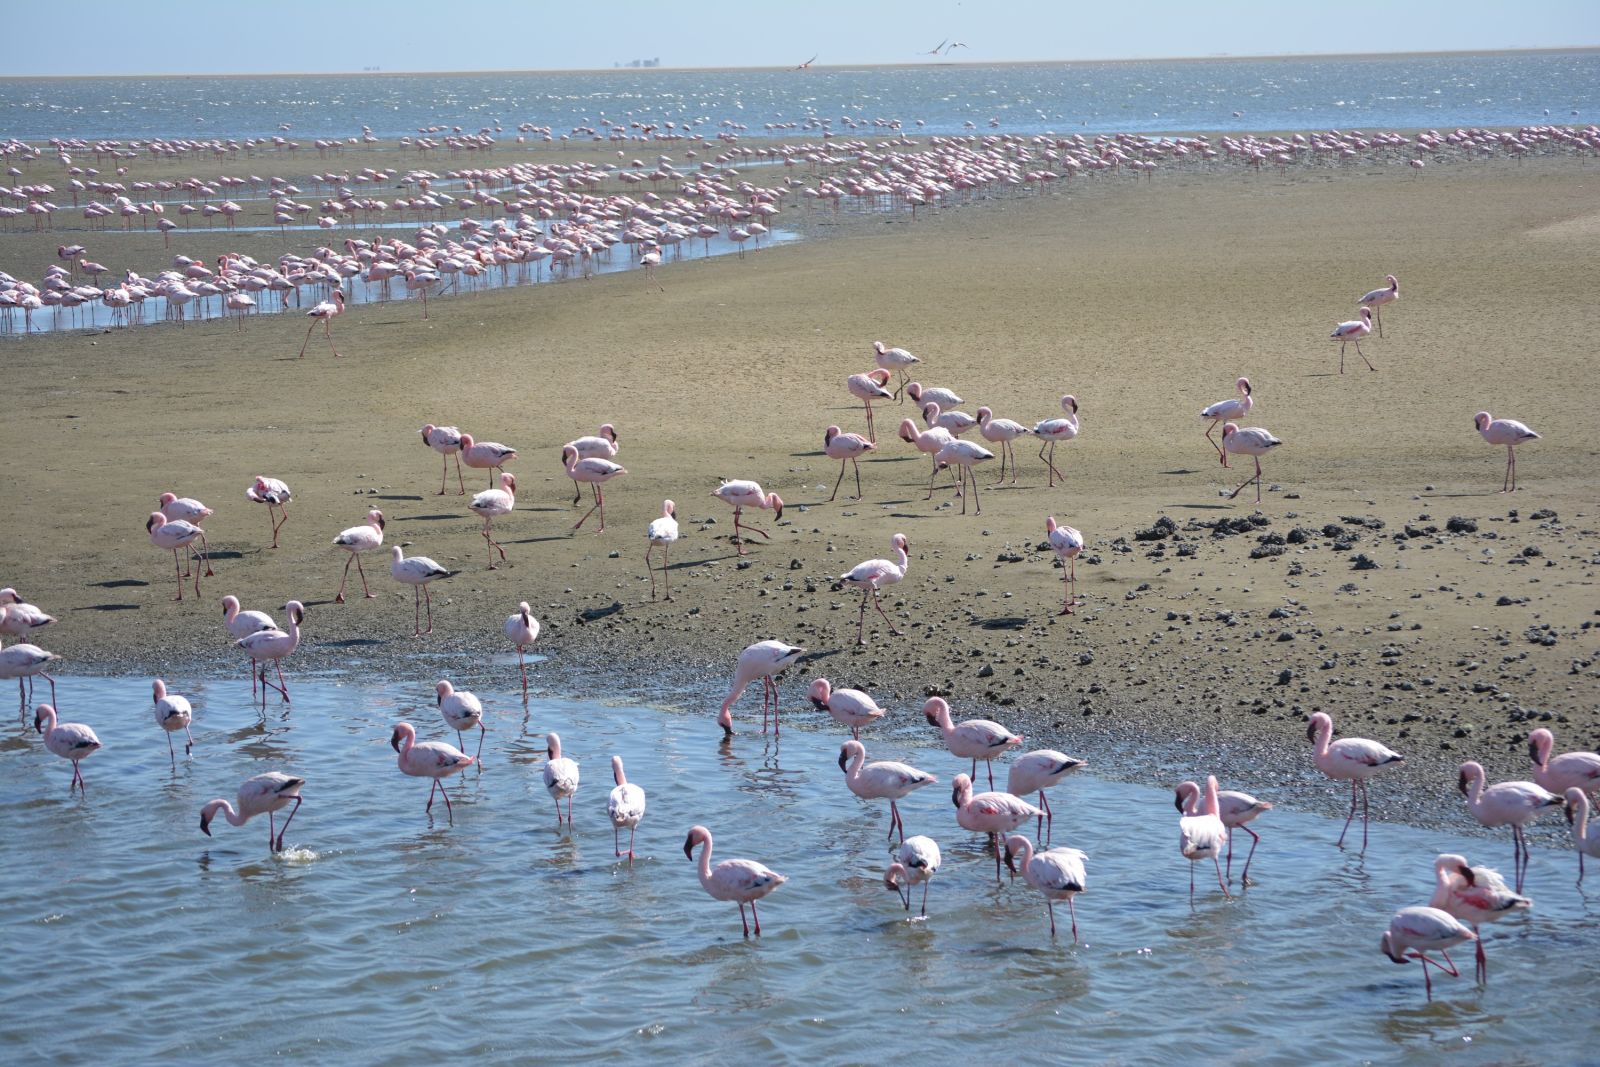 Auf dem Weg nach Swakopmund  halten wir in Walvis Bay, wo sich im Wasser tausende von Flamingos einfinden und ein wahrlich pinkfarbenes Fotovergnügen bereiten.